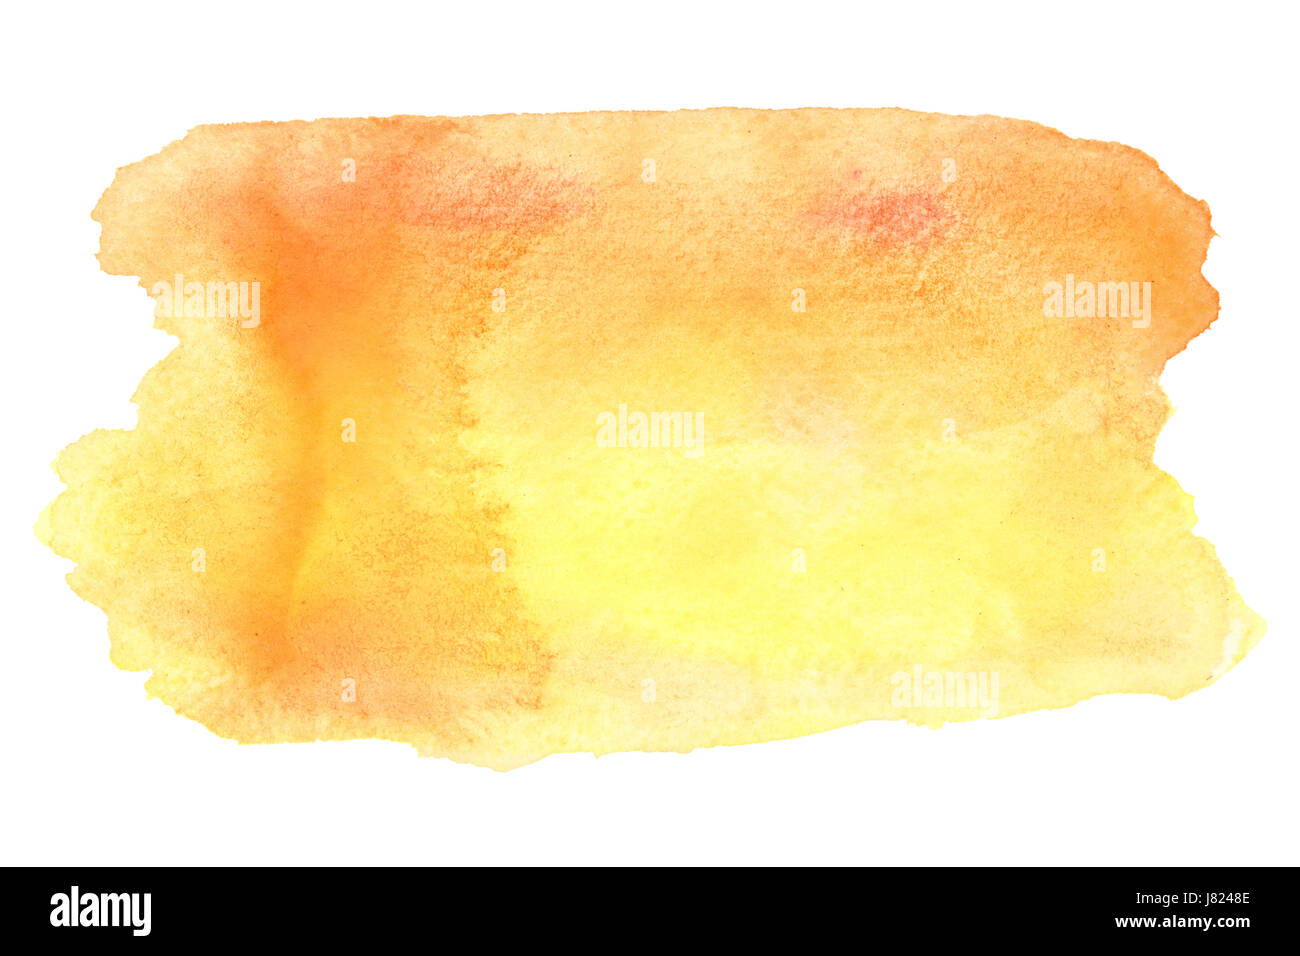 Amarillo-naranja trazos de pincel de acuarela aislados sobre el fondo blanco. Foto de stock